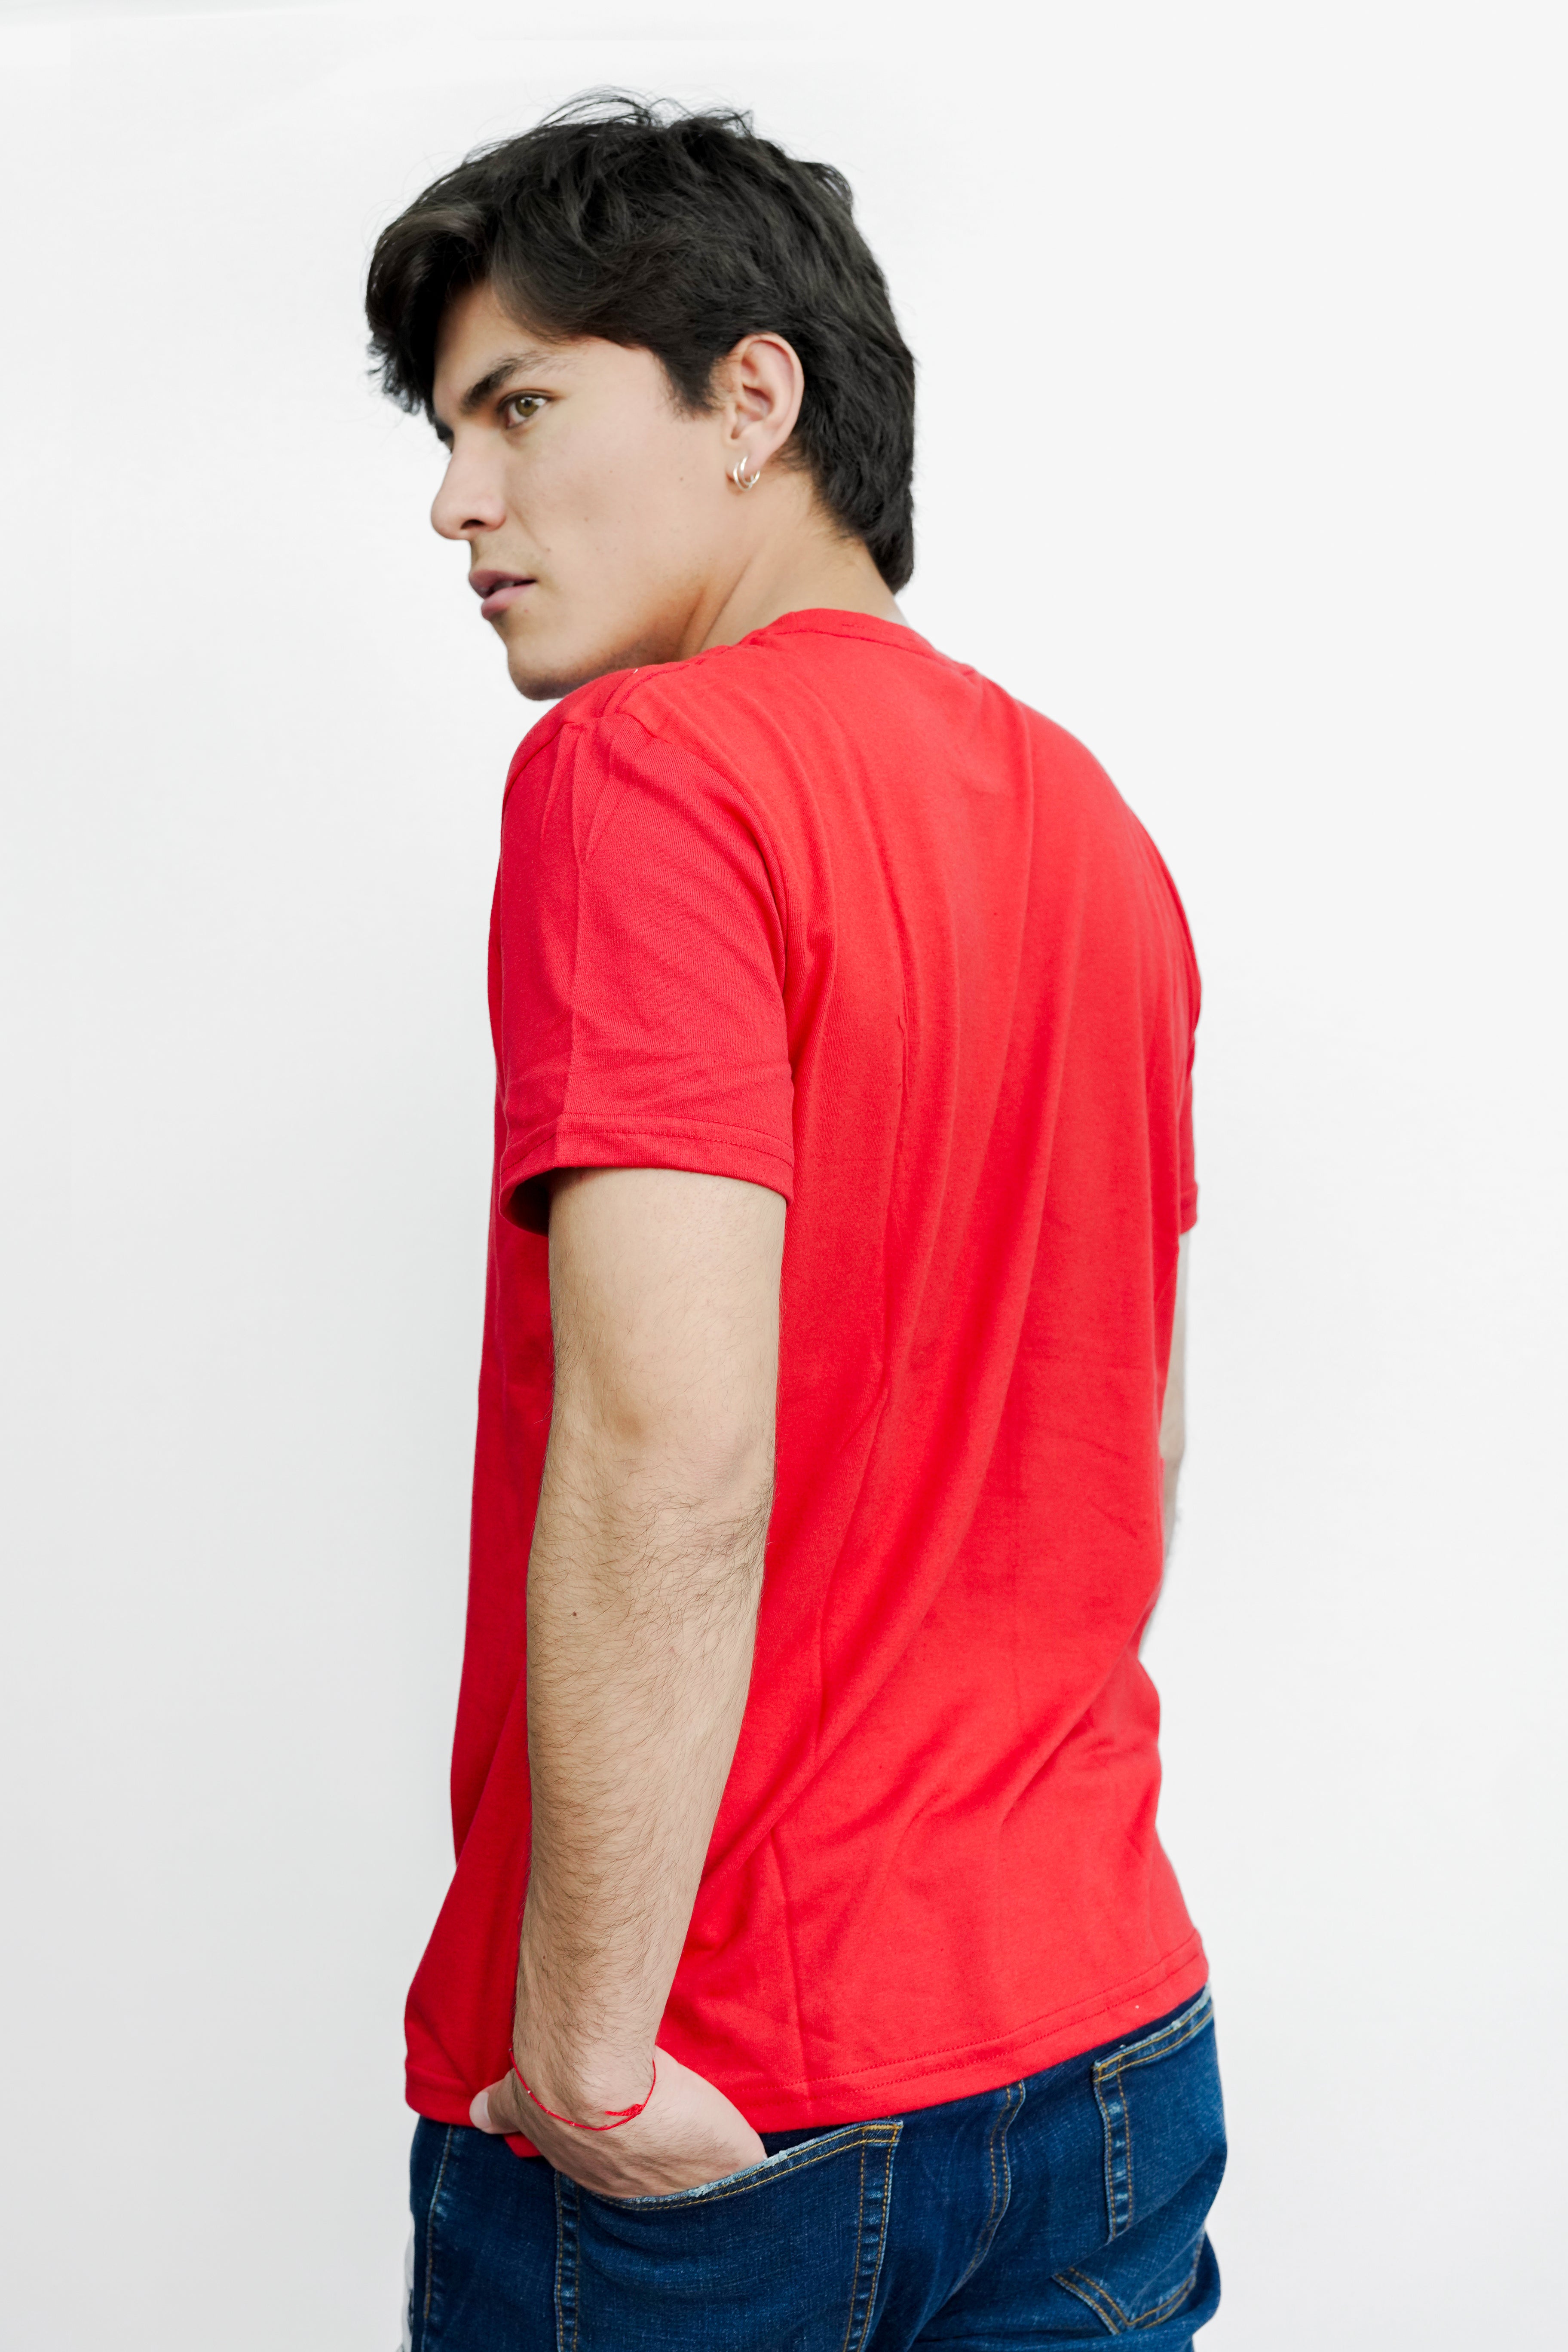 Camiseta Para Hombre Level 1 Graphic Tees Aero Level 1 Graphic Tees True Red True Red 3827